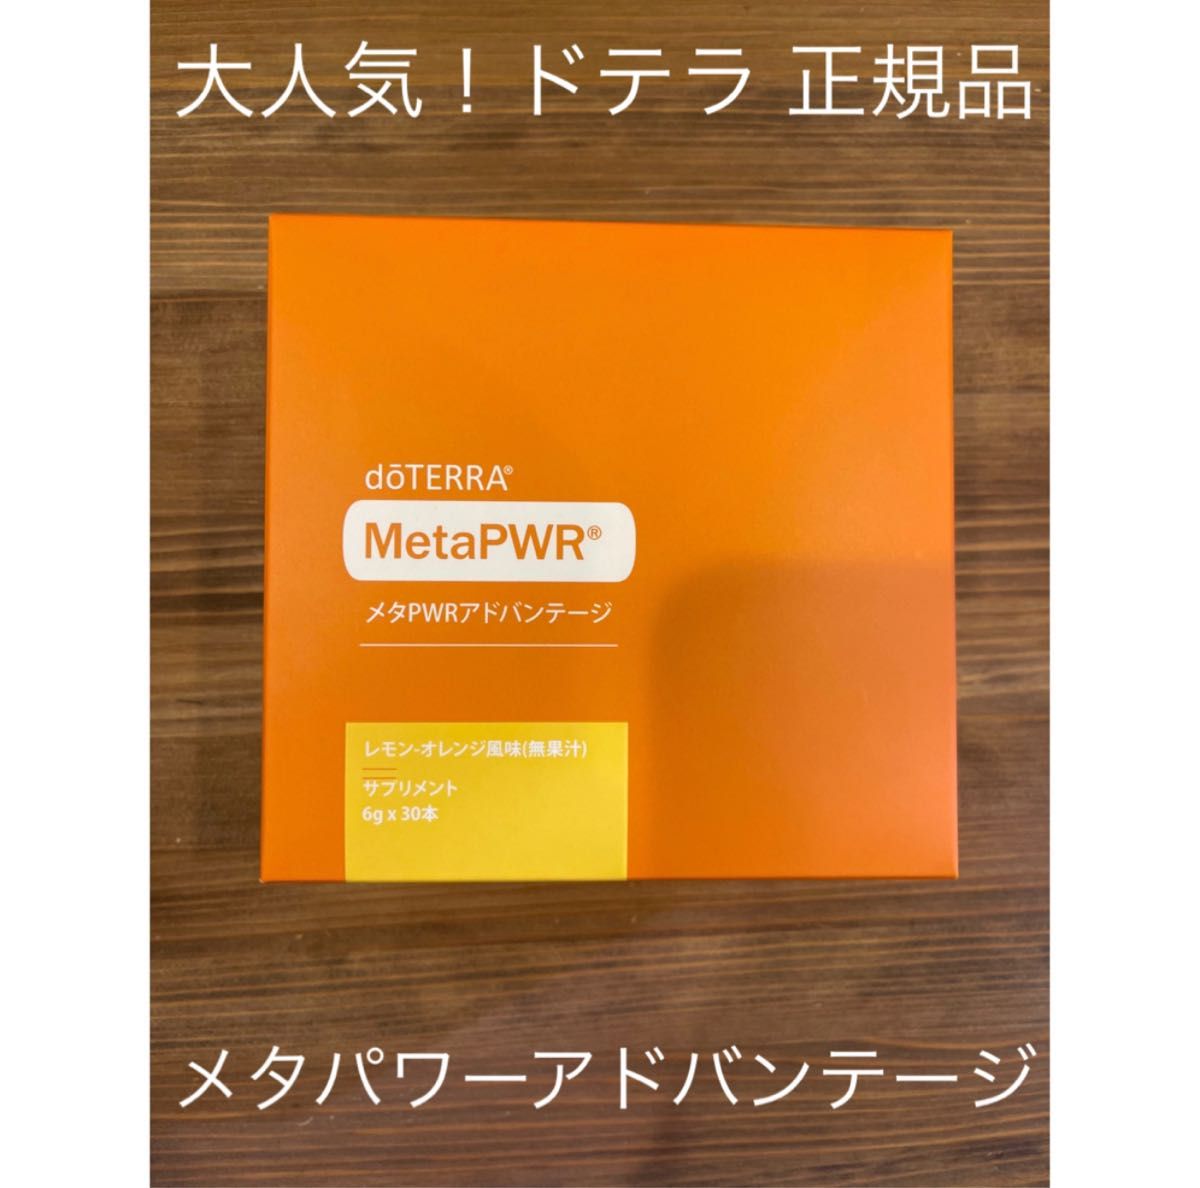 特注製作 ドテラ メタPWR メタパワー アドバンテージ | artfive.co.jp